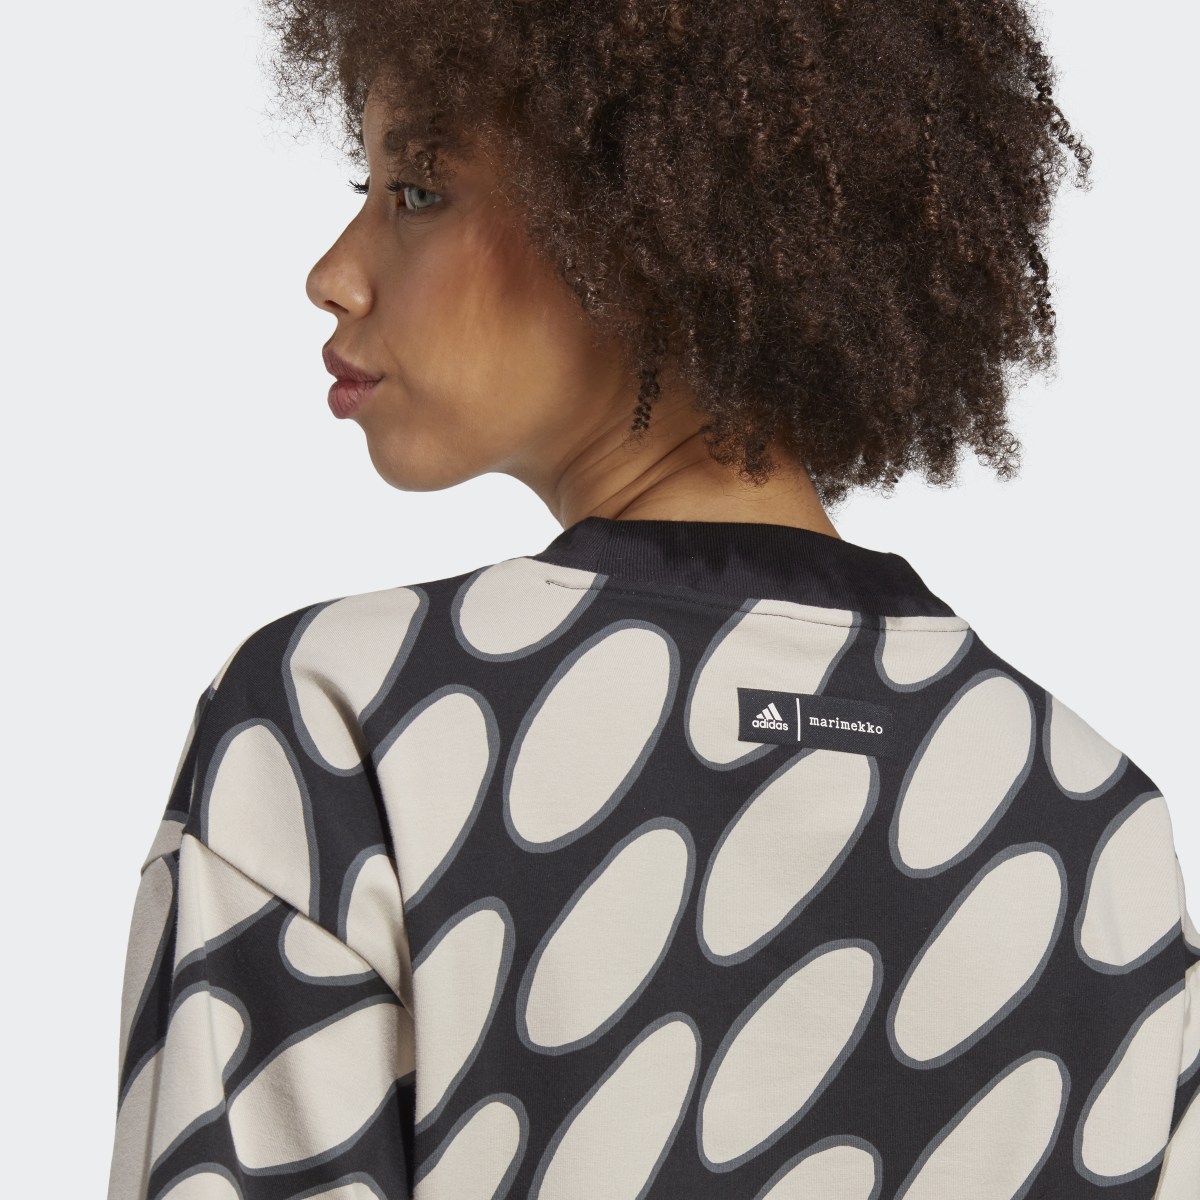 Adidas Marimekko Future Icons 3-Streifen T-Shirt. 9